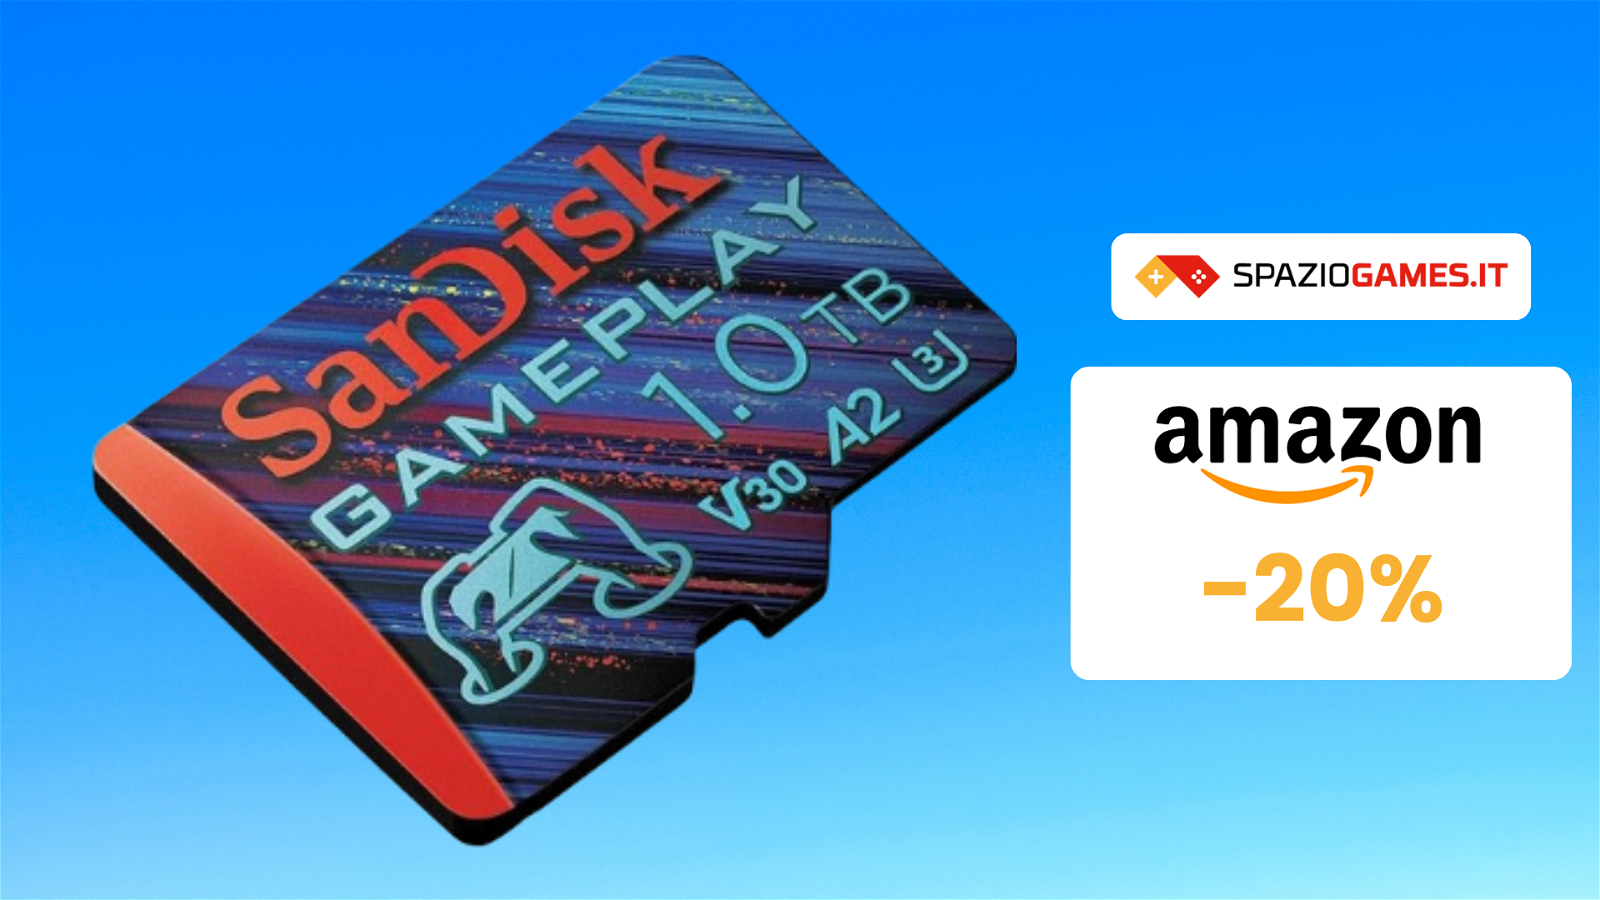 MicroSD SanDisk da 1TB in SCONTO su Amazon! -20%!